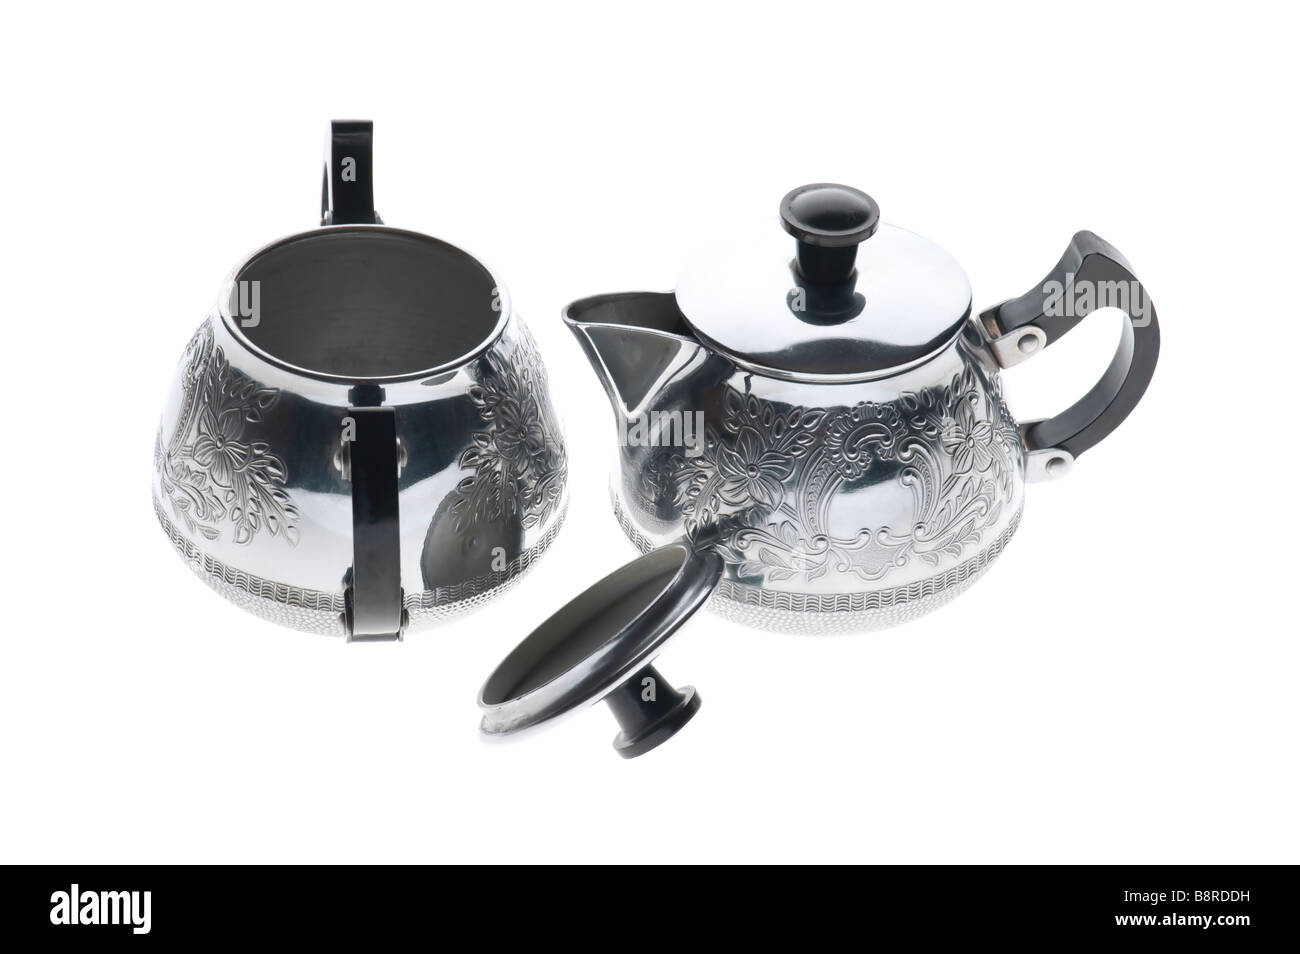 object on white kitchen utensil metal teapot Stock Photo